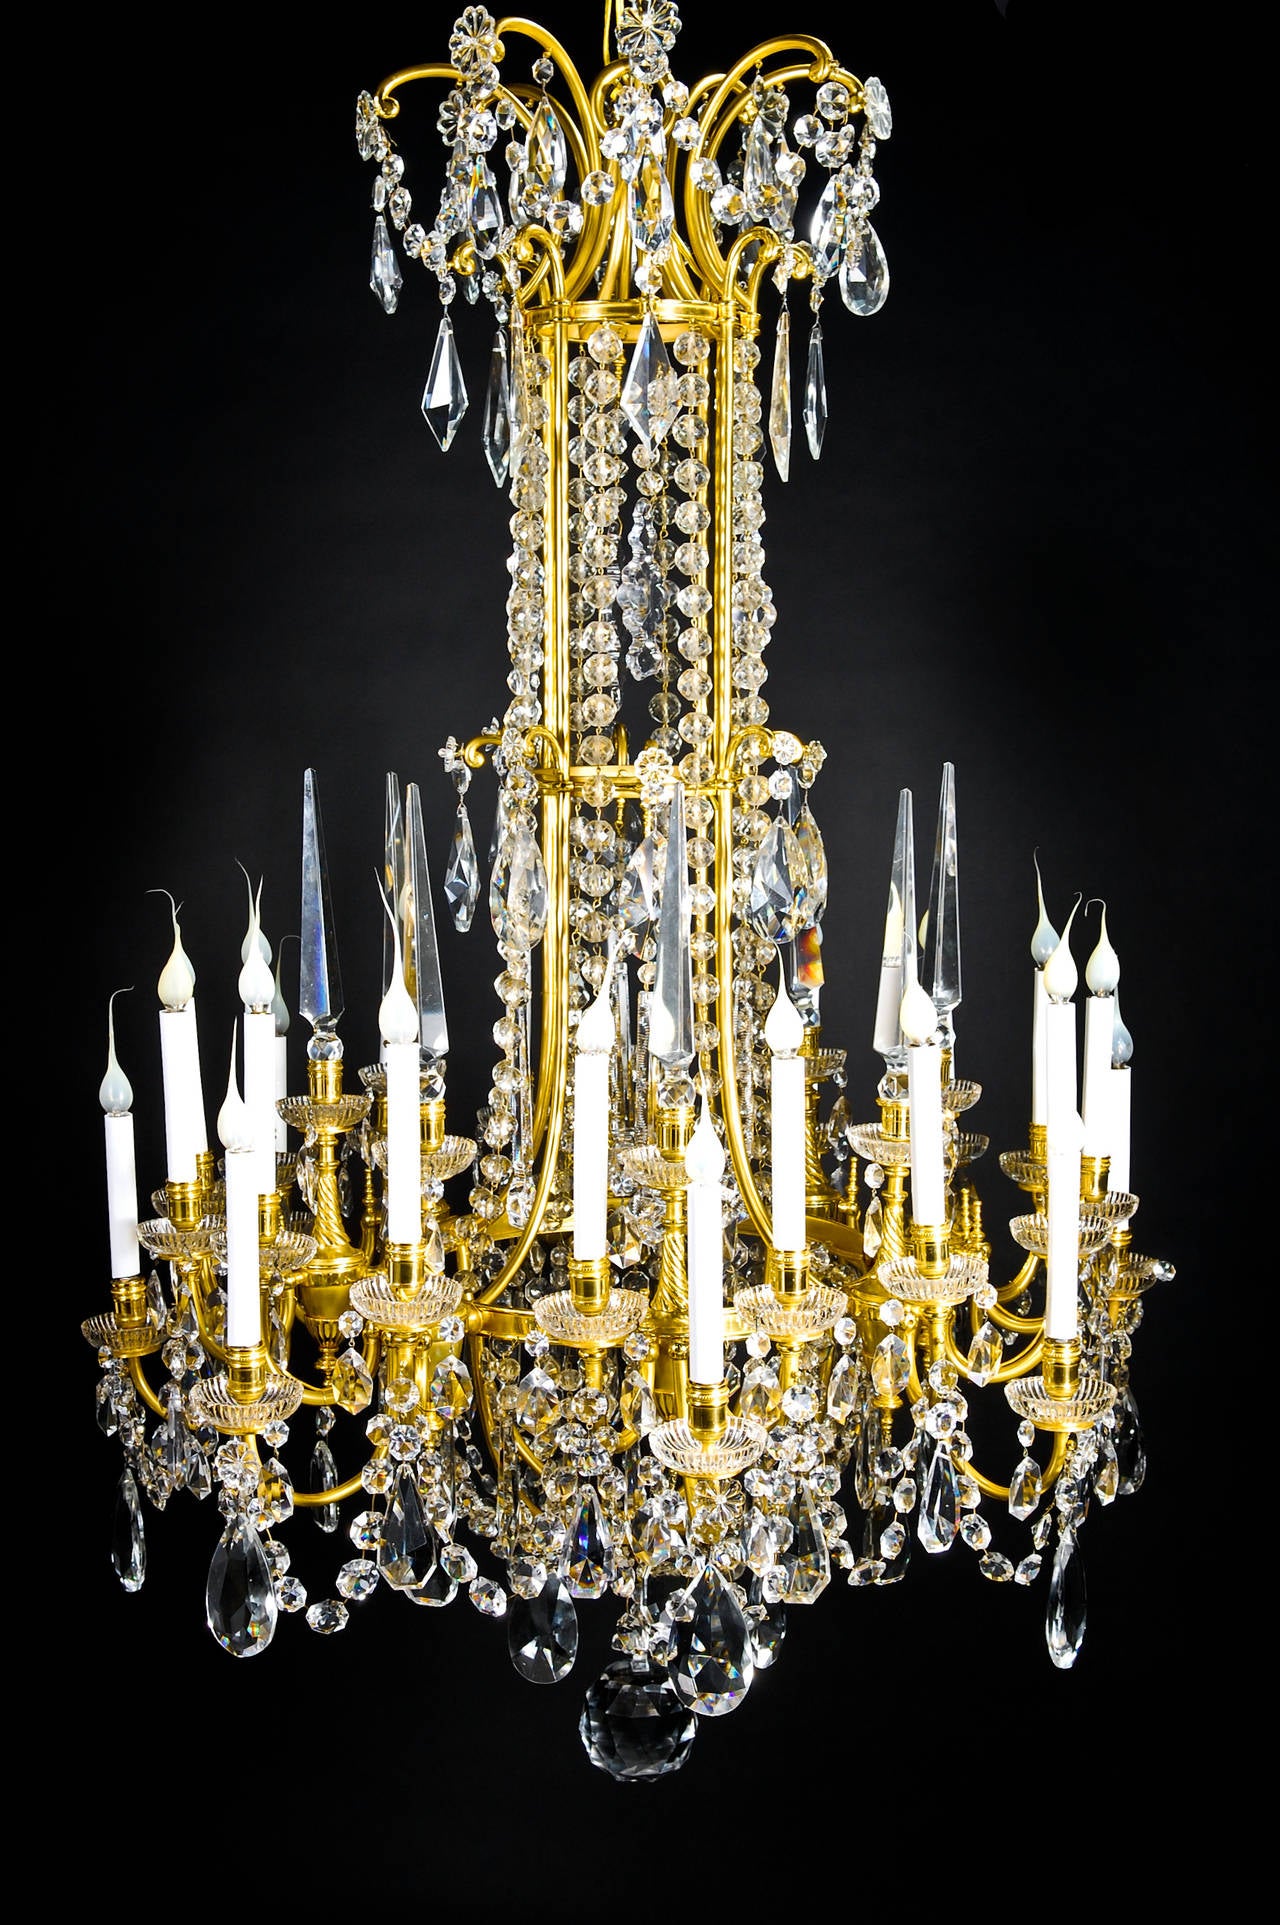 Eine spektakuläre und große antike Französisch Louis XVI-Stil vergoldeter Bronze und geschliffenem Kristall dreistöckigen Multi-Licht-Kronleuchter mit Glas Bobeches, geschliffenen Kristall-Ketten und weiter mit geschliffenen Kristall-Prismen von